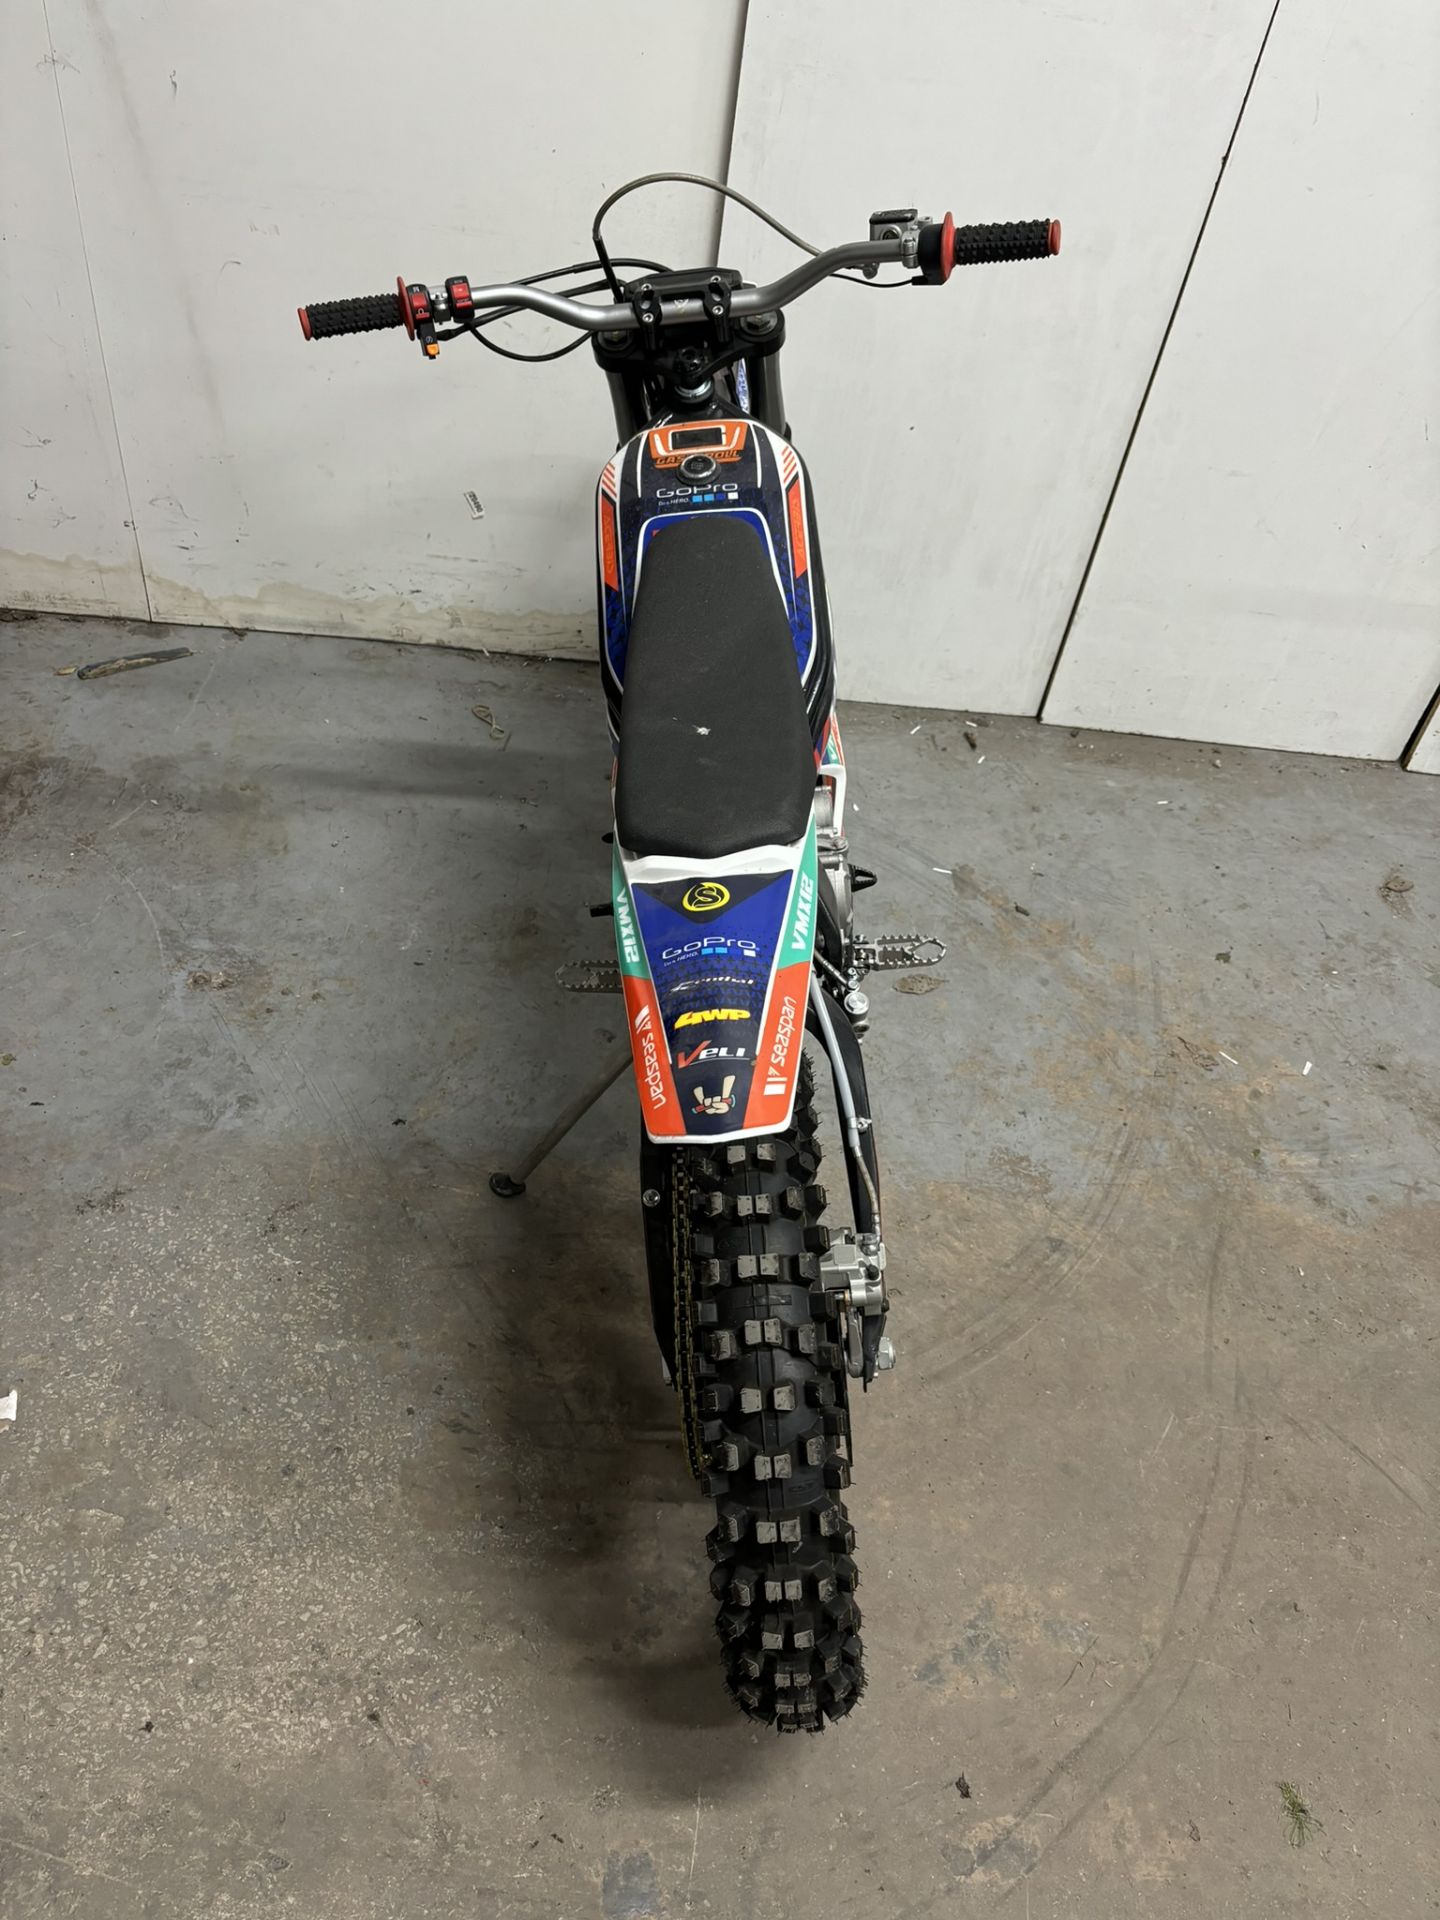 Velimotor VMX12 Electric Motorcycle / Dirt Bike - Image 16 of 24